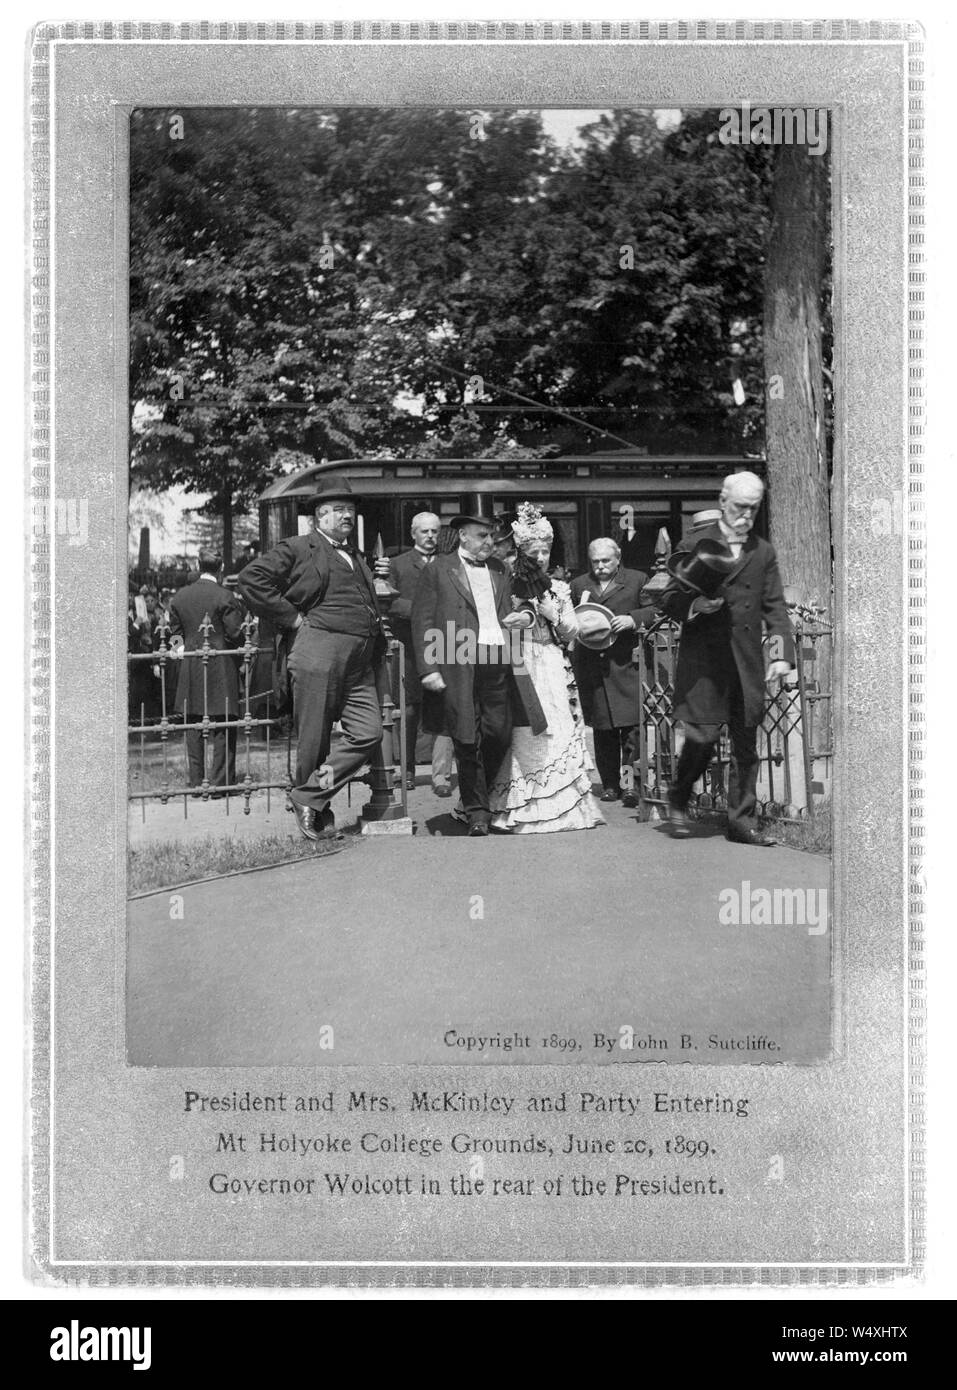 Präsident und Frau McKinley und Partei in Mt. Holyoke College, Juni 20, 1899, Regler Wolcott in der Rückseite der Präsident, Foto: John B. Sutcliffe Stockfoto